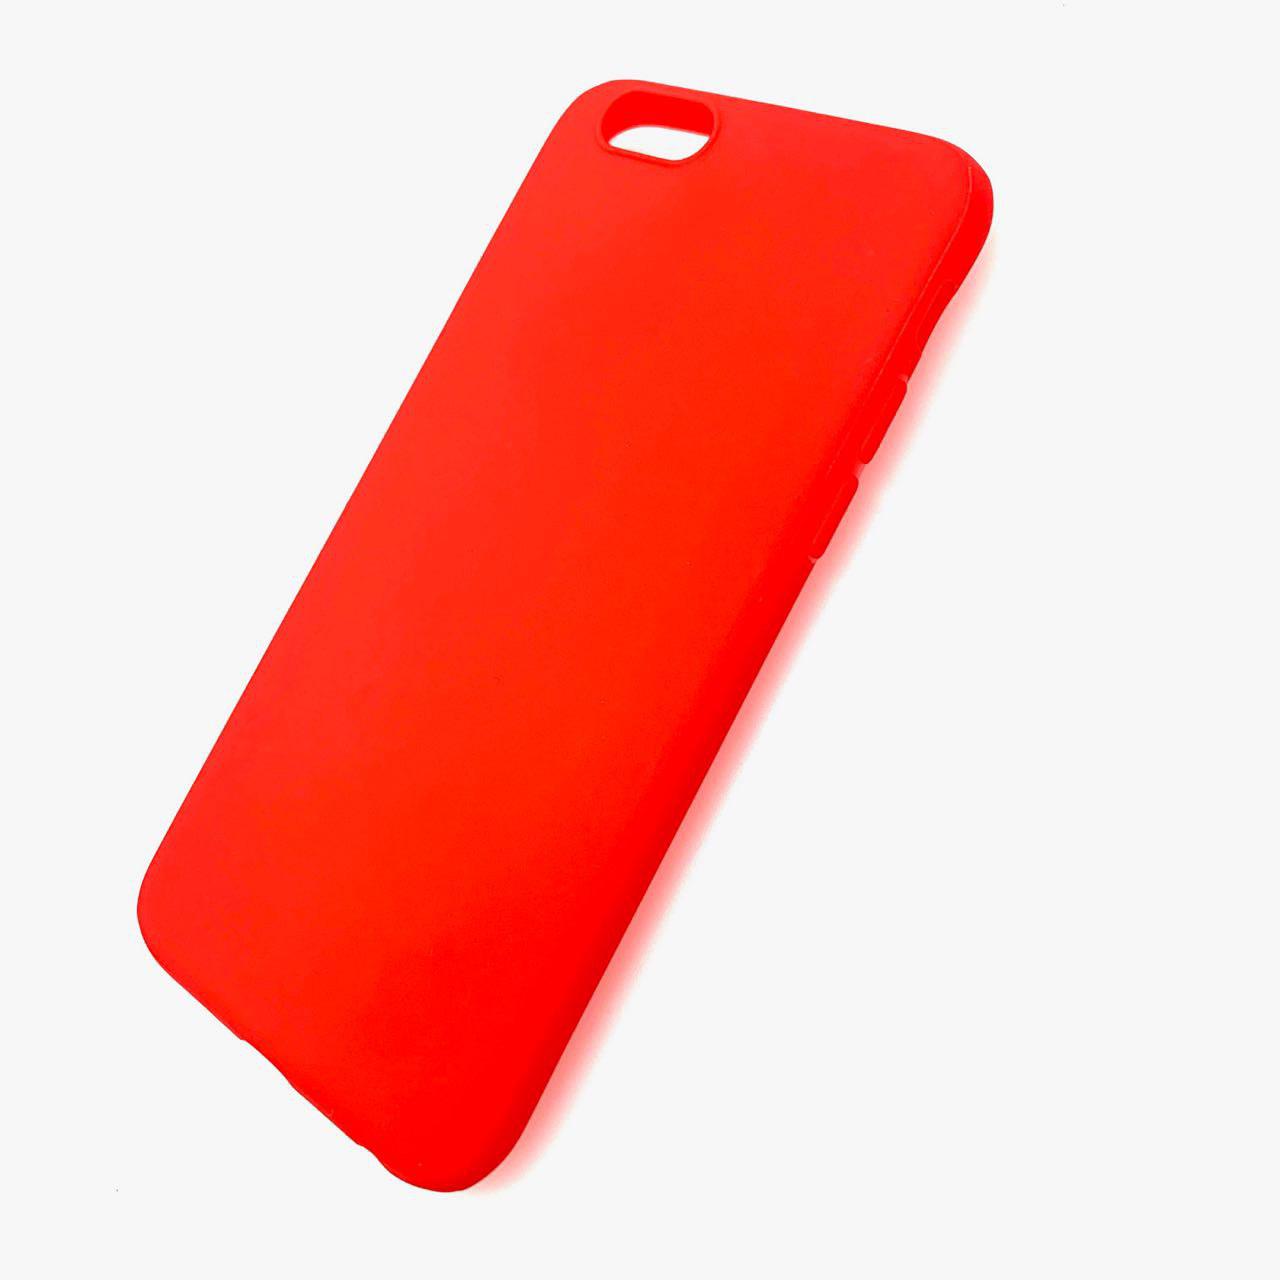 Чехол-накладка для APPLE iPhone 6/6S (4.7") силиконовая, цвет красный.